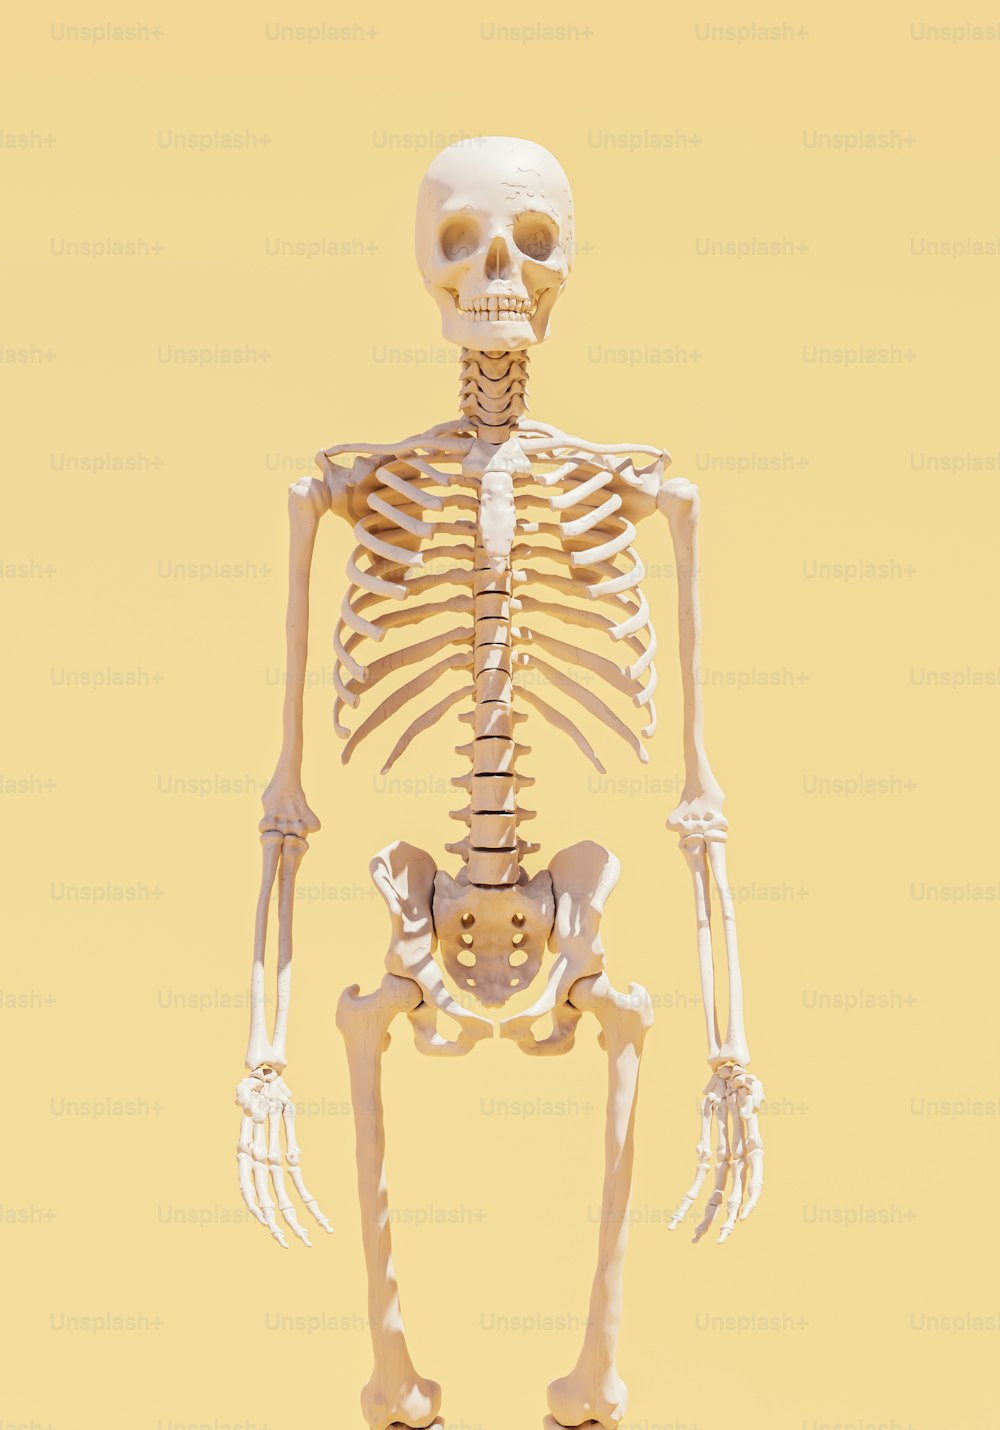 Ein Skelett steht in der Mitte eines gelben Hintergrunds